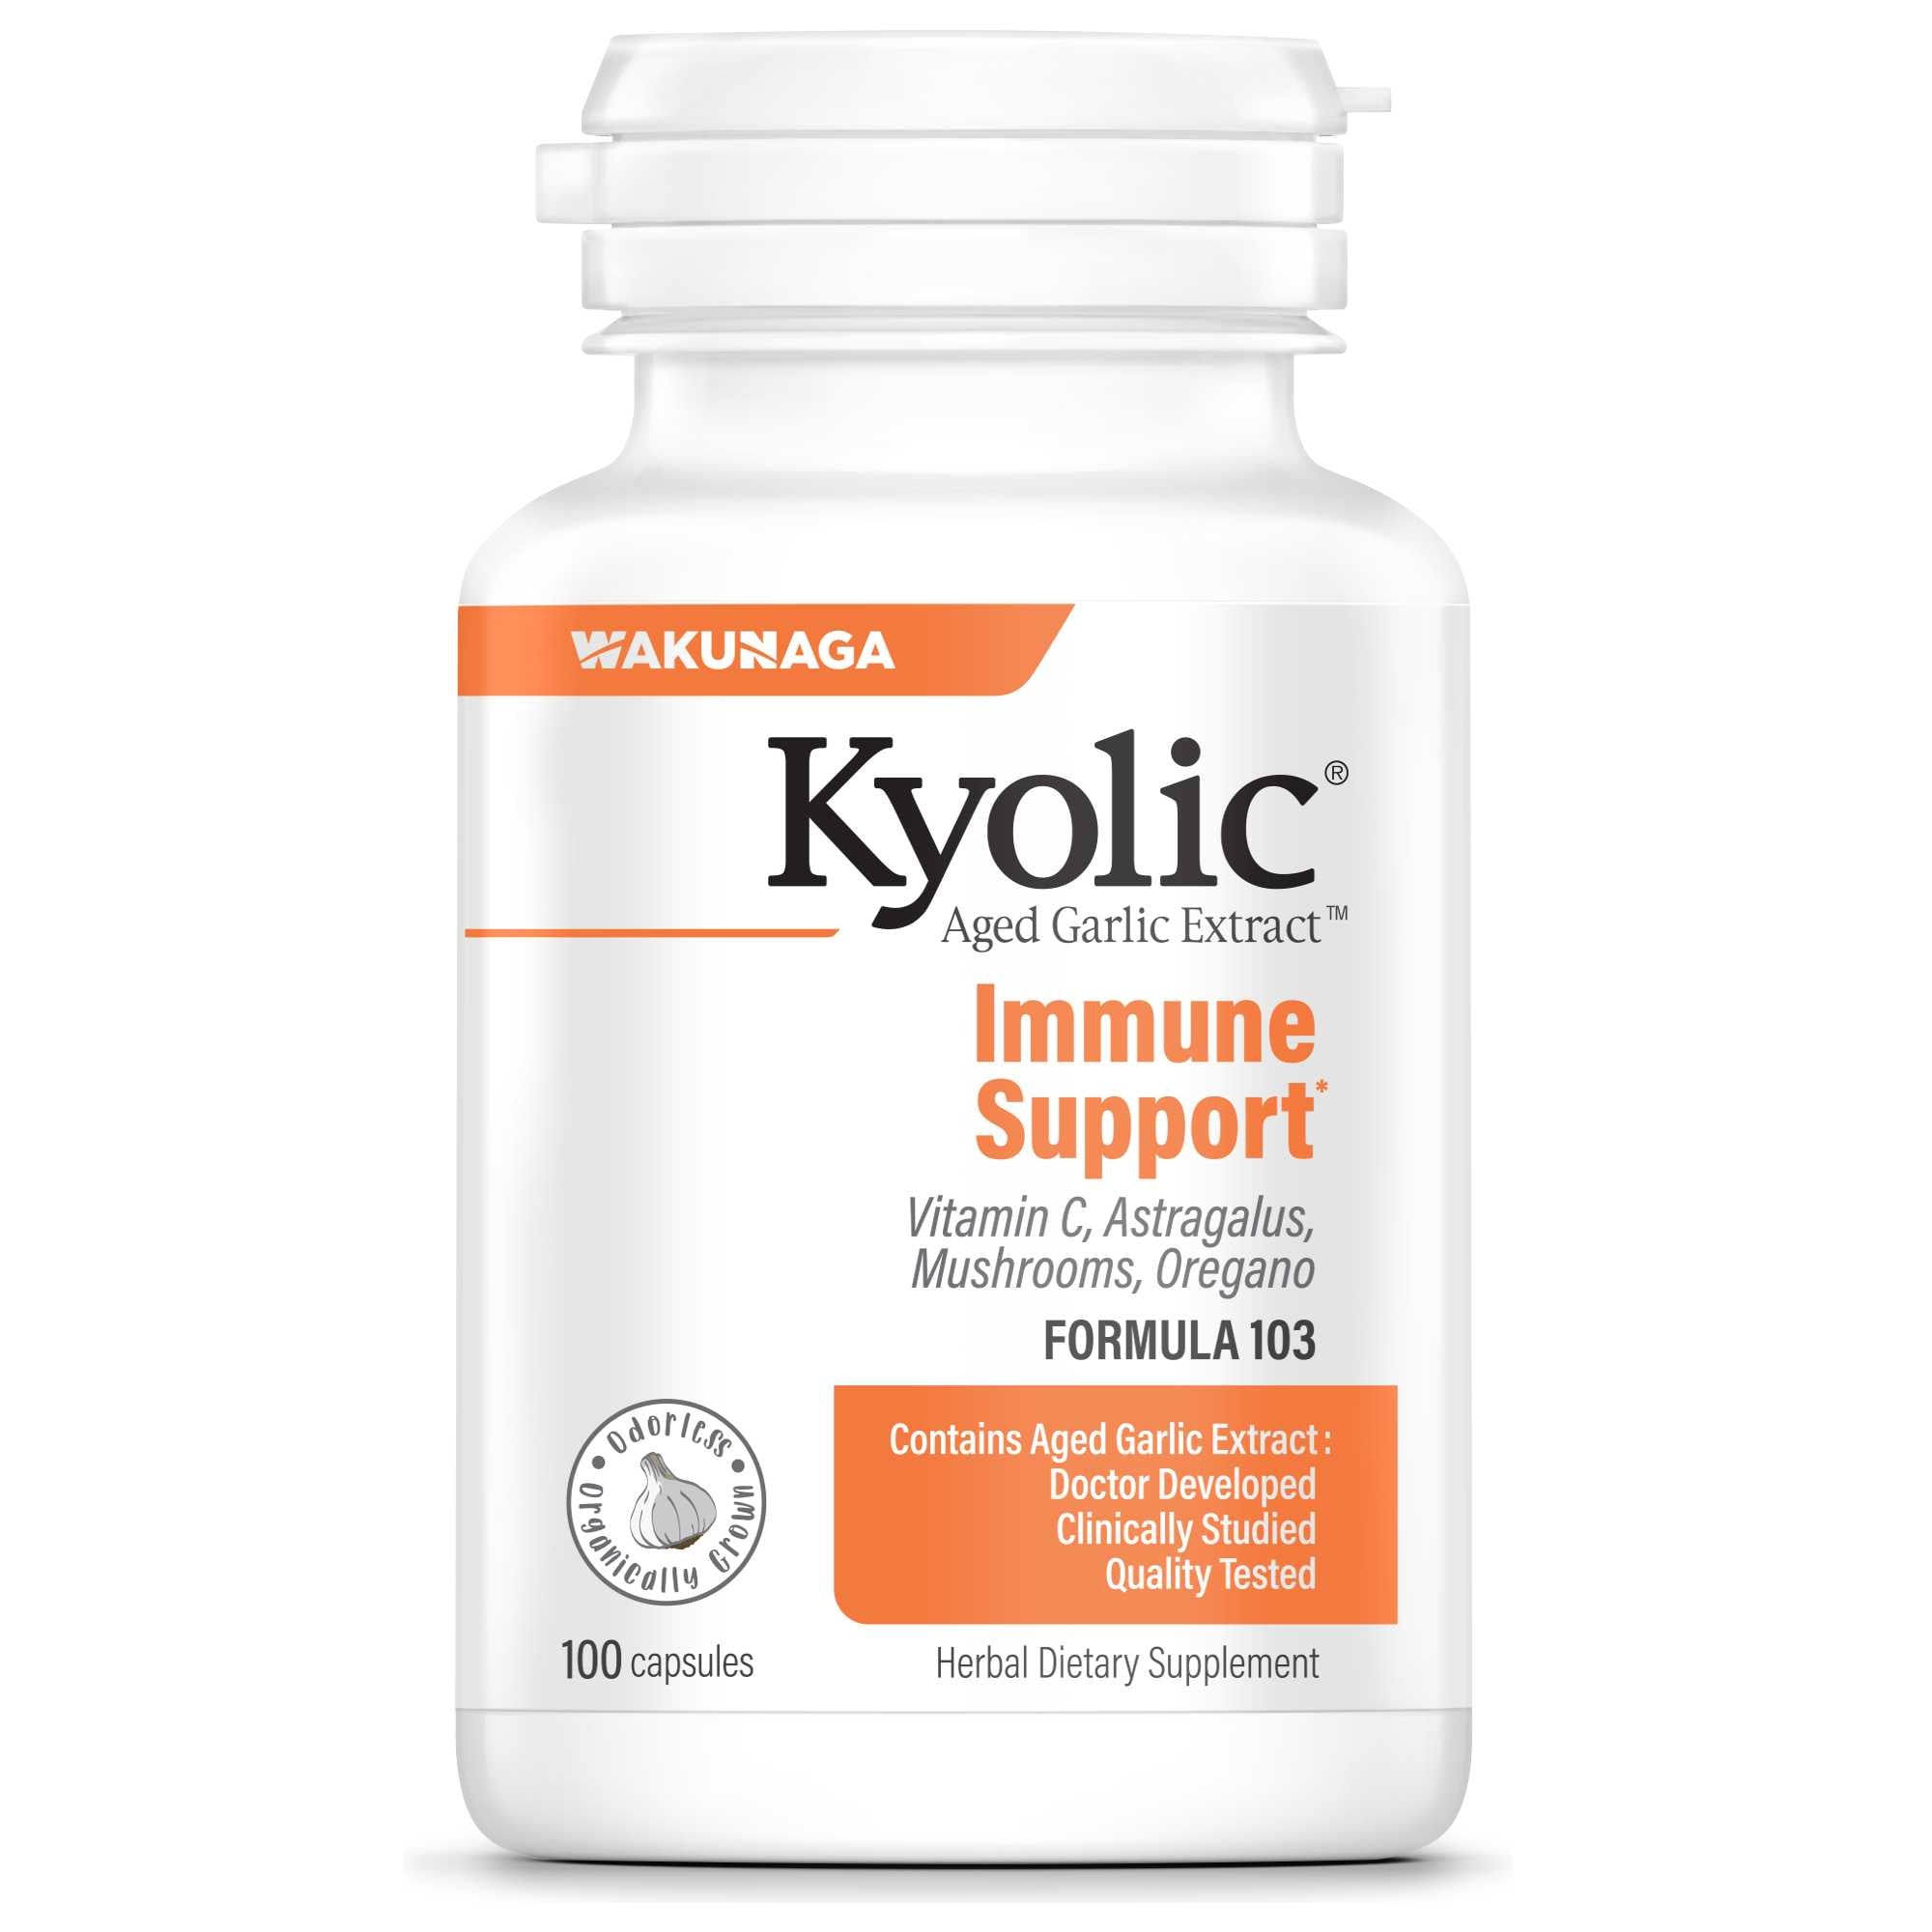 Kyolic Aged Garlic Extract Immune Formula 103 - 100 Capsules